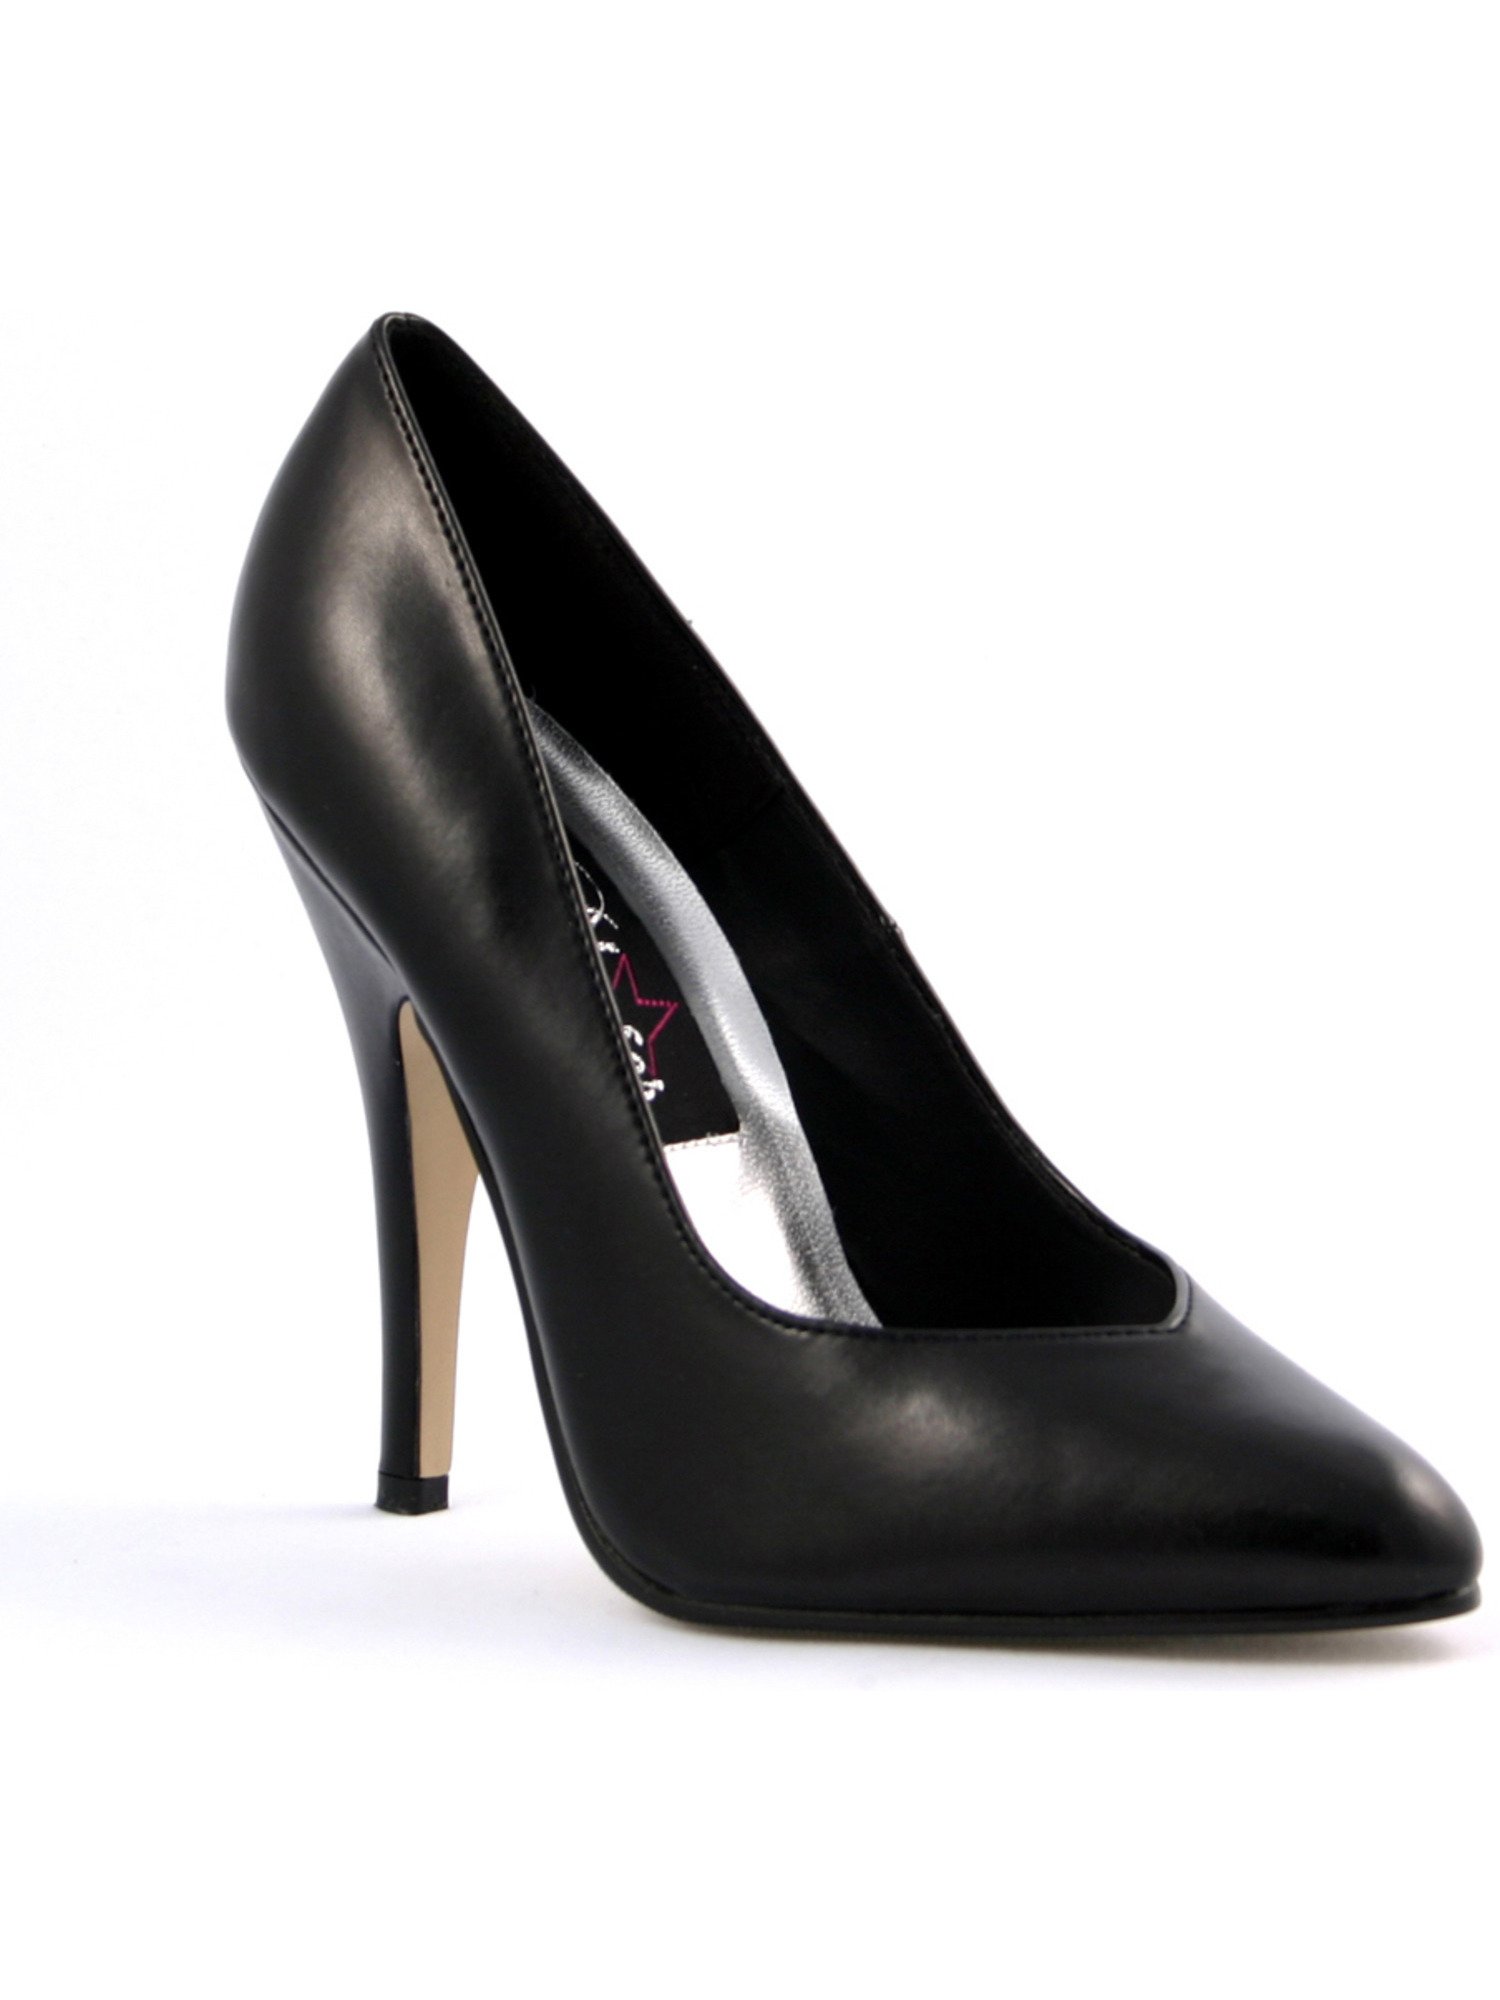 Итальянские туфли Lezilla черные женские кожаные чёрные